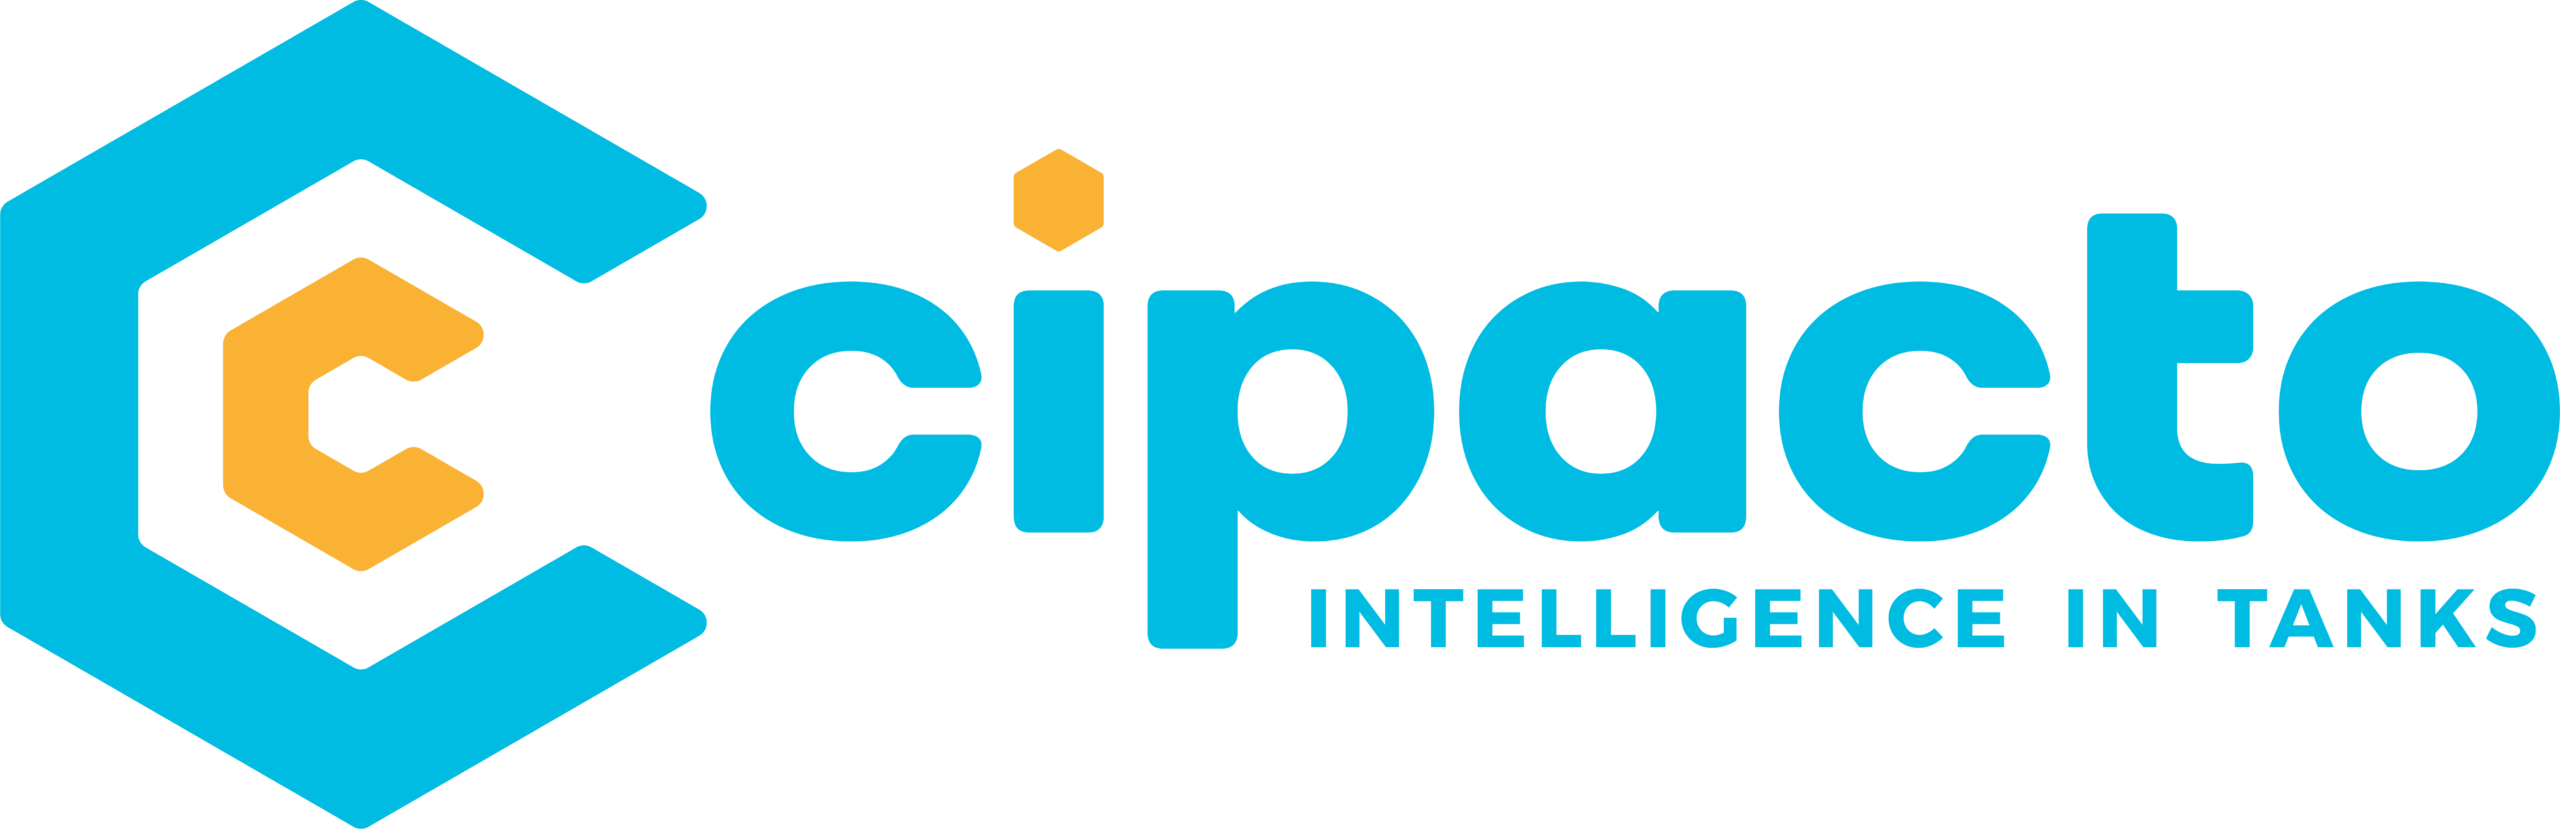 cipacto.com